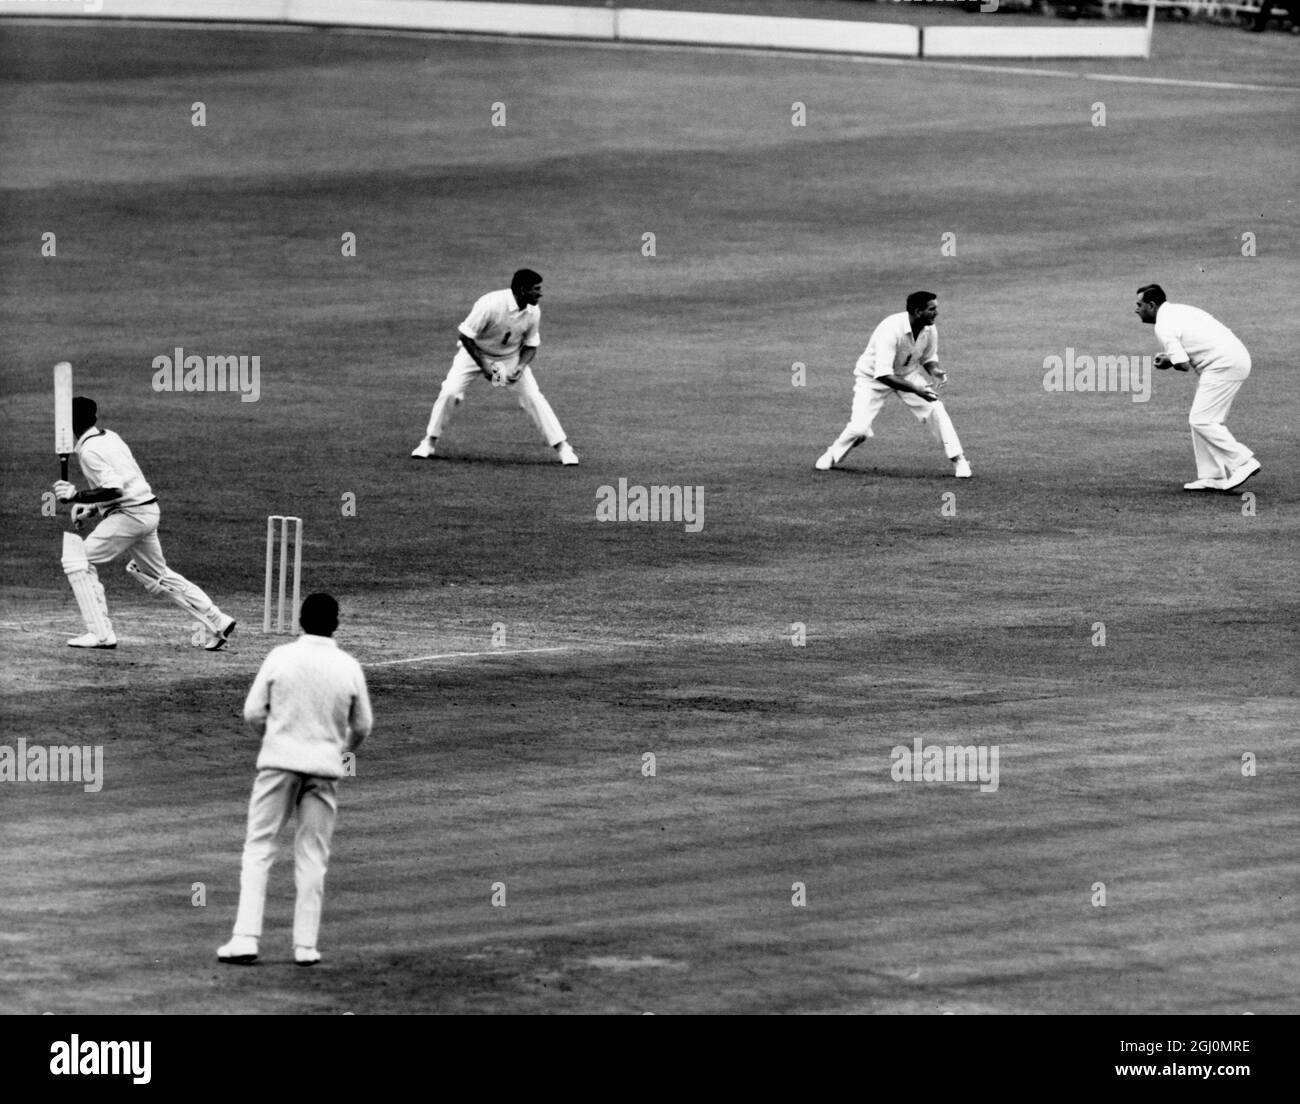 Cricket bei Lords 2. Testspiel England gegen Australien Ashes Serie Fourth Day J W Gleeson (Australien) wird von M C Cowdrey aus der Bowling von D J Brown für 14 gefangen. Dieser Fang von Cowdrey ist ein Weltrekord bei den Fängen. Juni 1968 Stockfoto